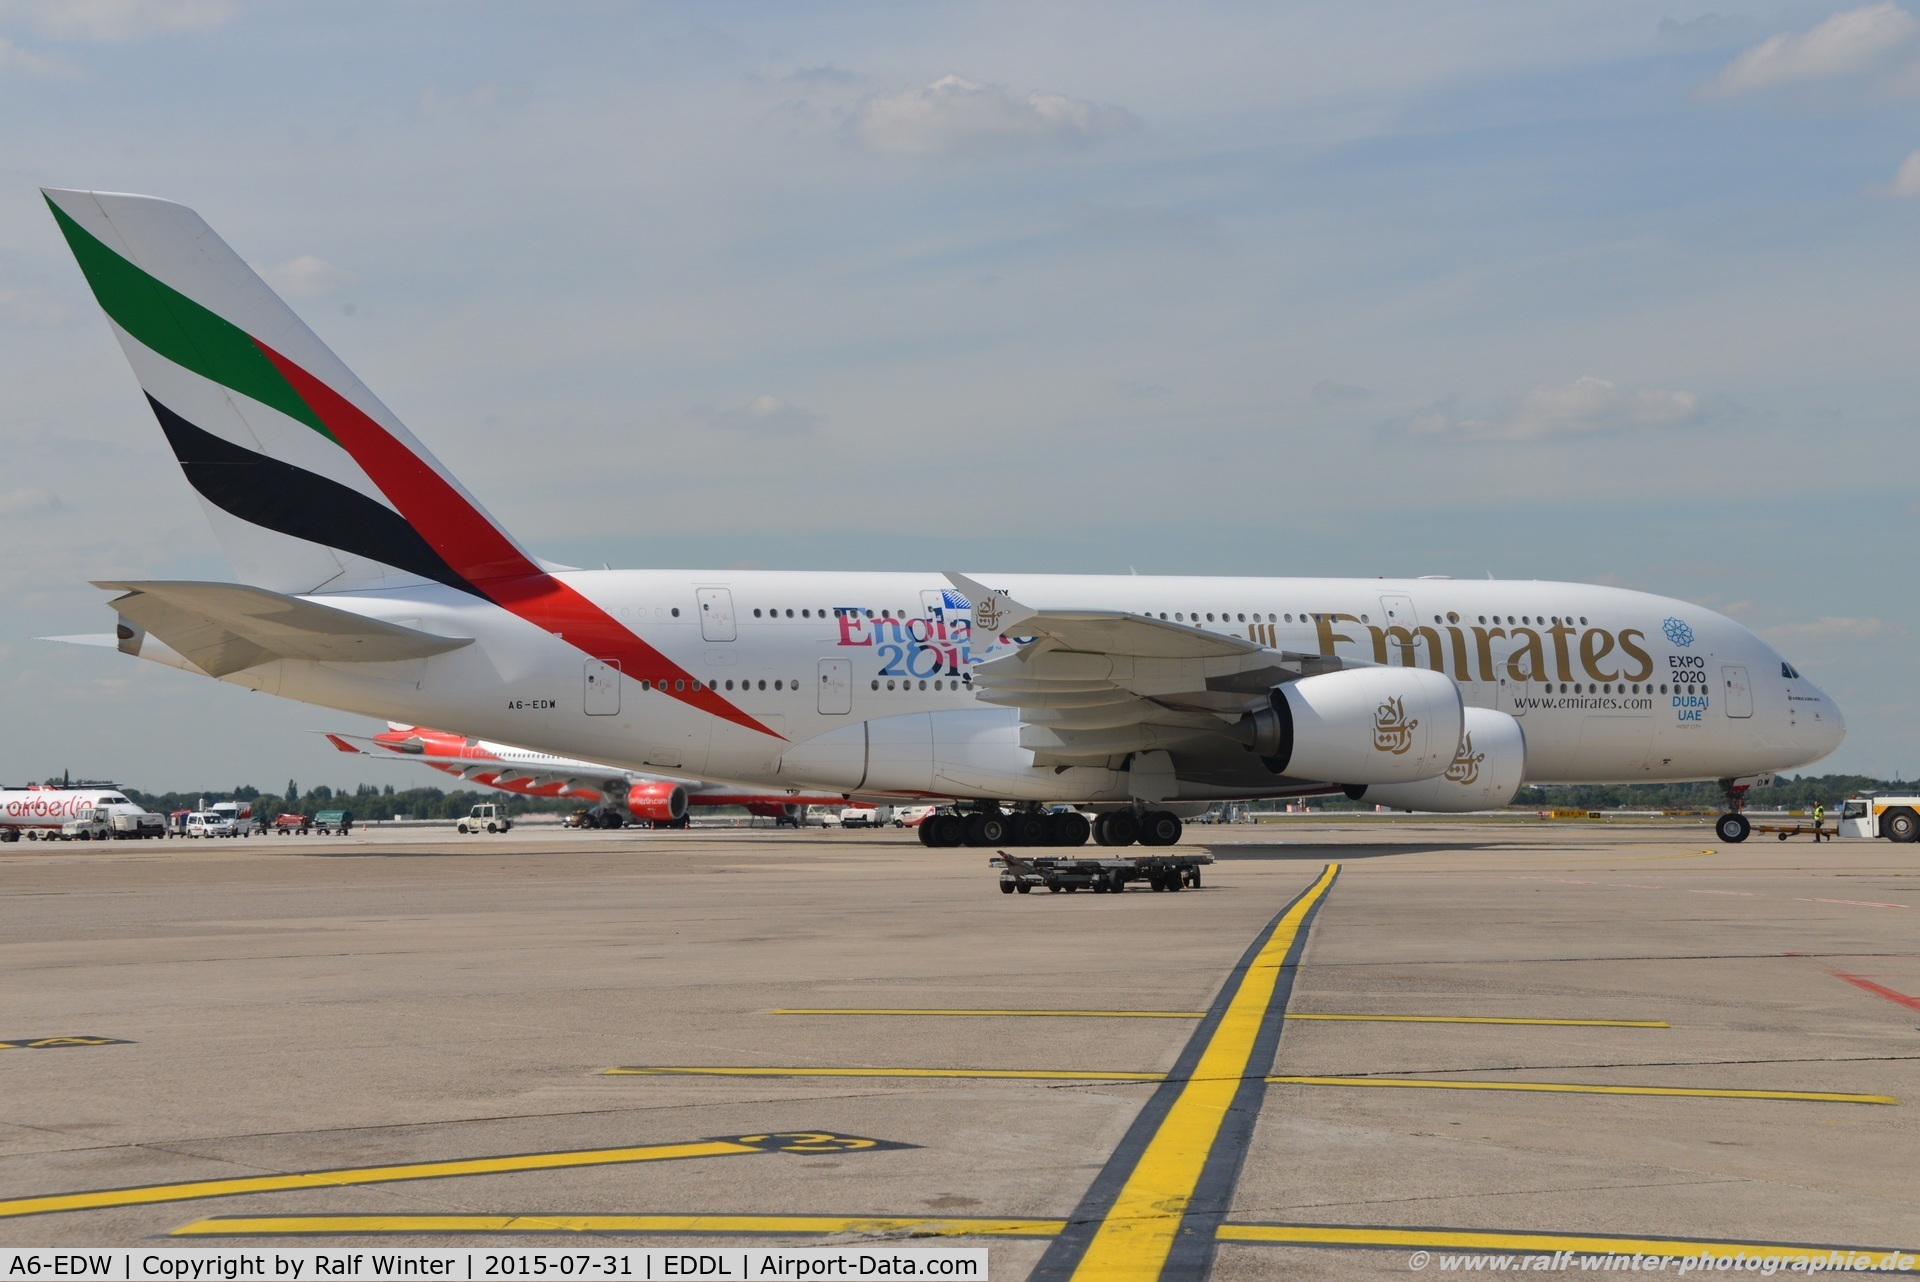 A6-EDW, 2012 Airbus A380-861 C/N 103, Airbus A380-861 - EK UAE Emirates 'Rugby England 2015' - 103 - A6-EDW - 31.07.2015 - DUS